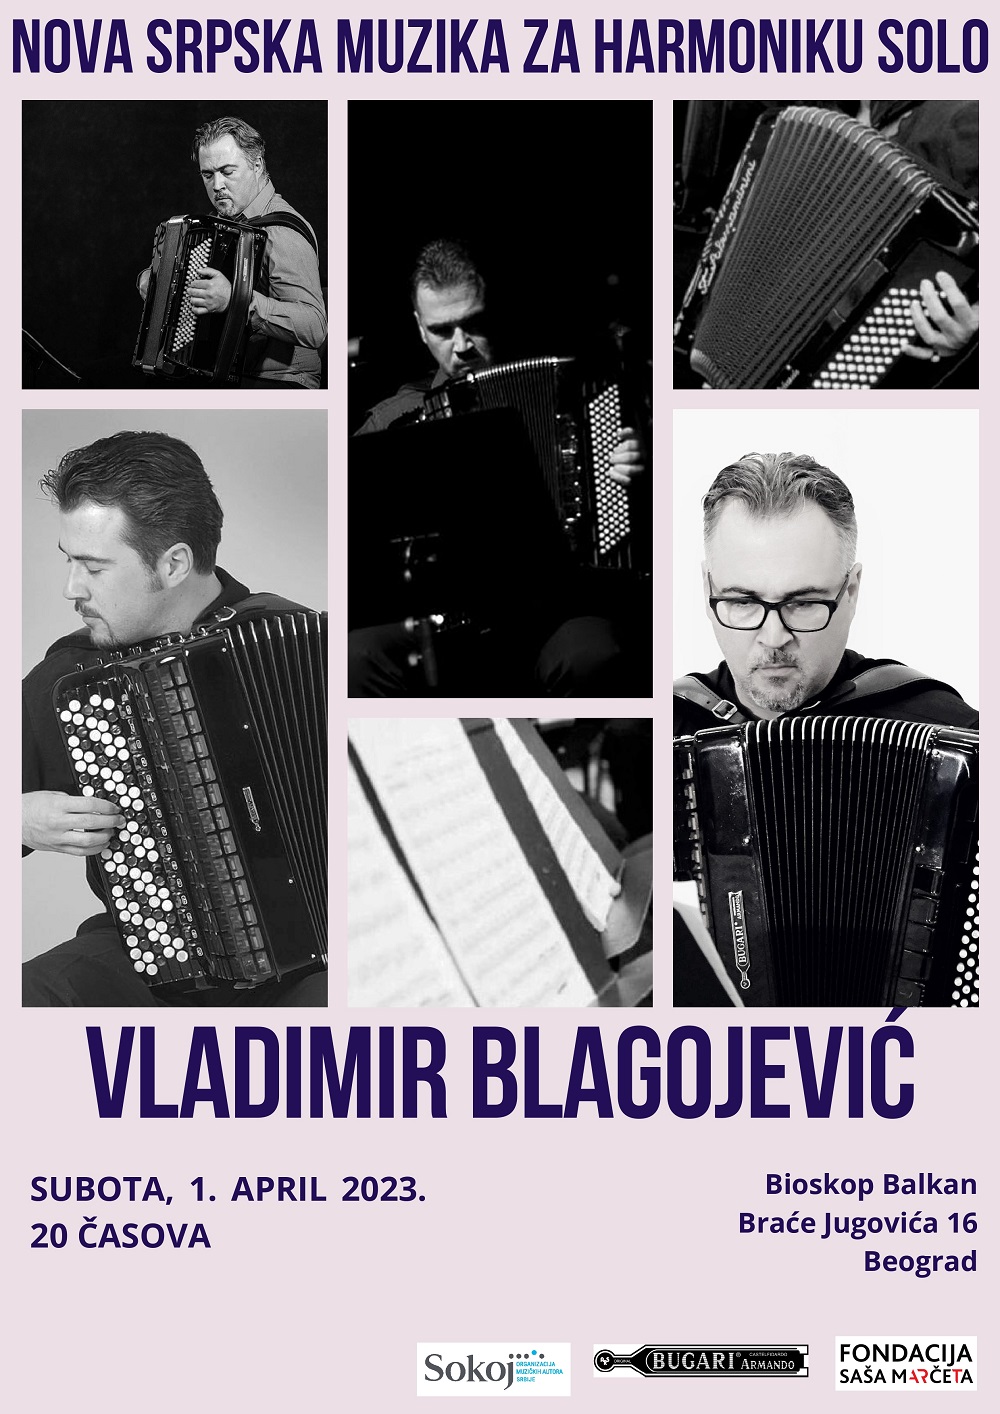 Koncert „Nova srpska muzika za harmoniku solo” Vladimira Blagojevića u Bioskopu Balkan 2